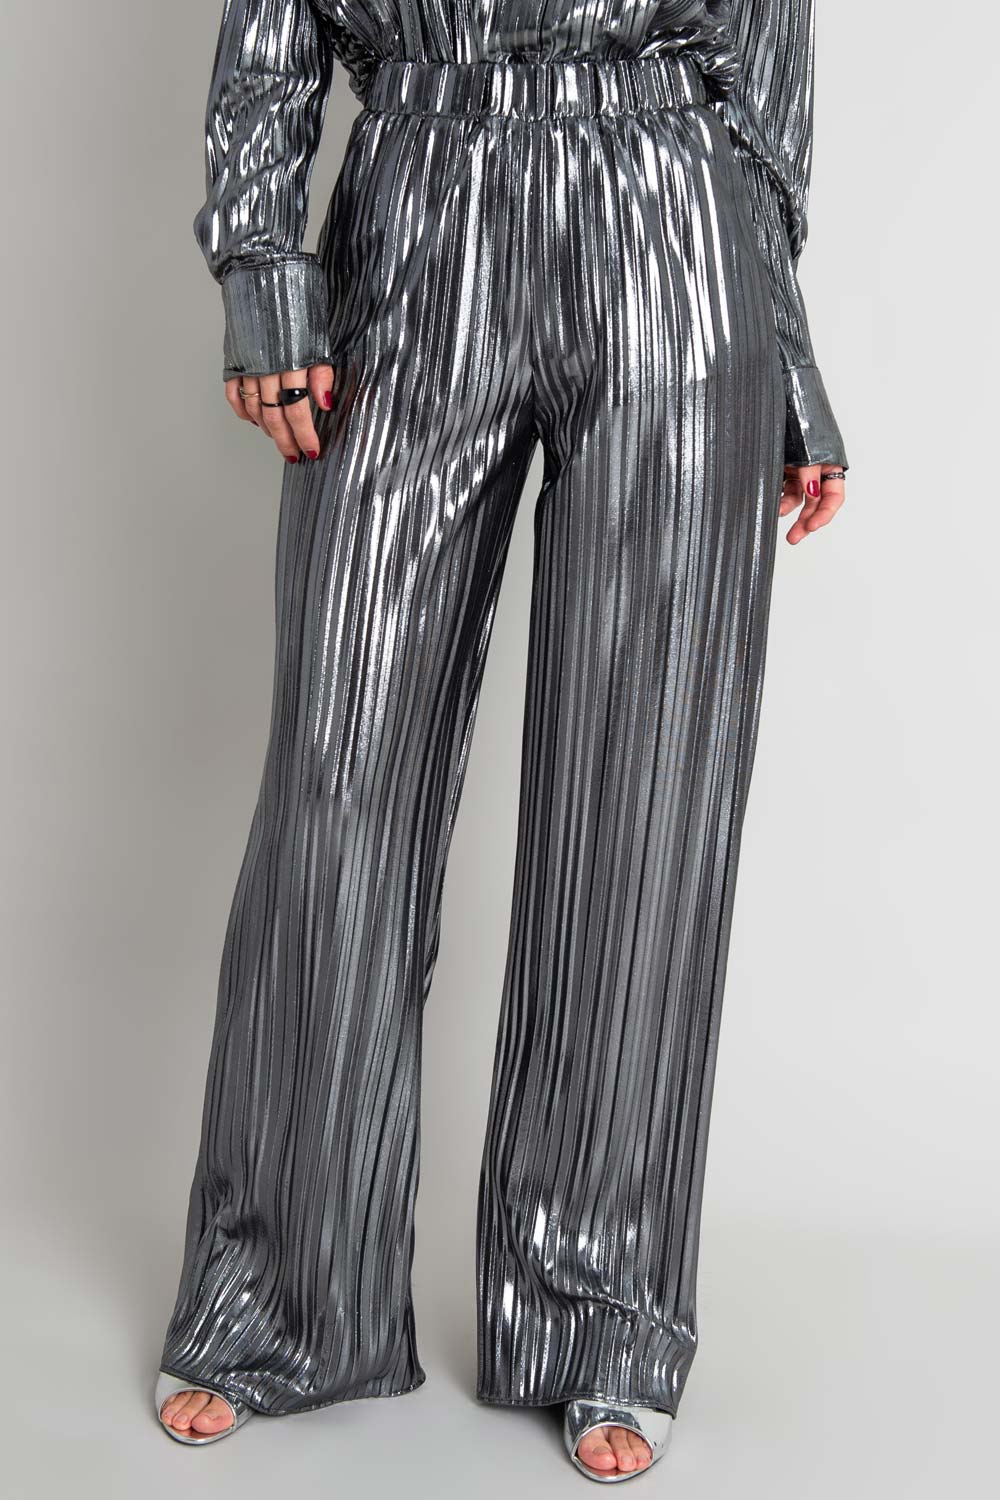 Pantalón satinado de fit wide leg, plisados en tejido y cintura alta con pretina elástica.